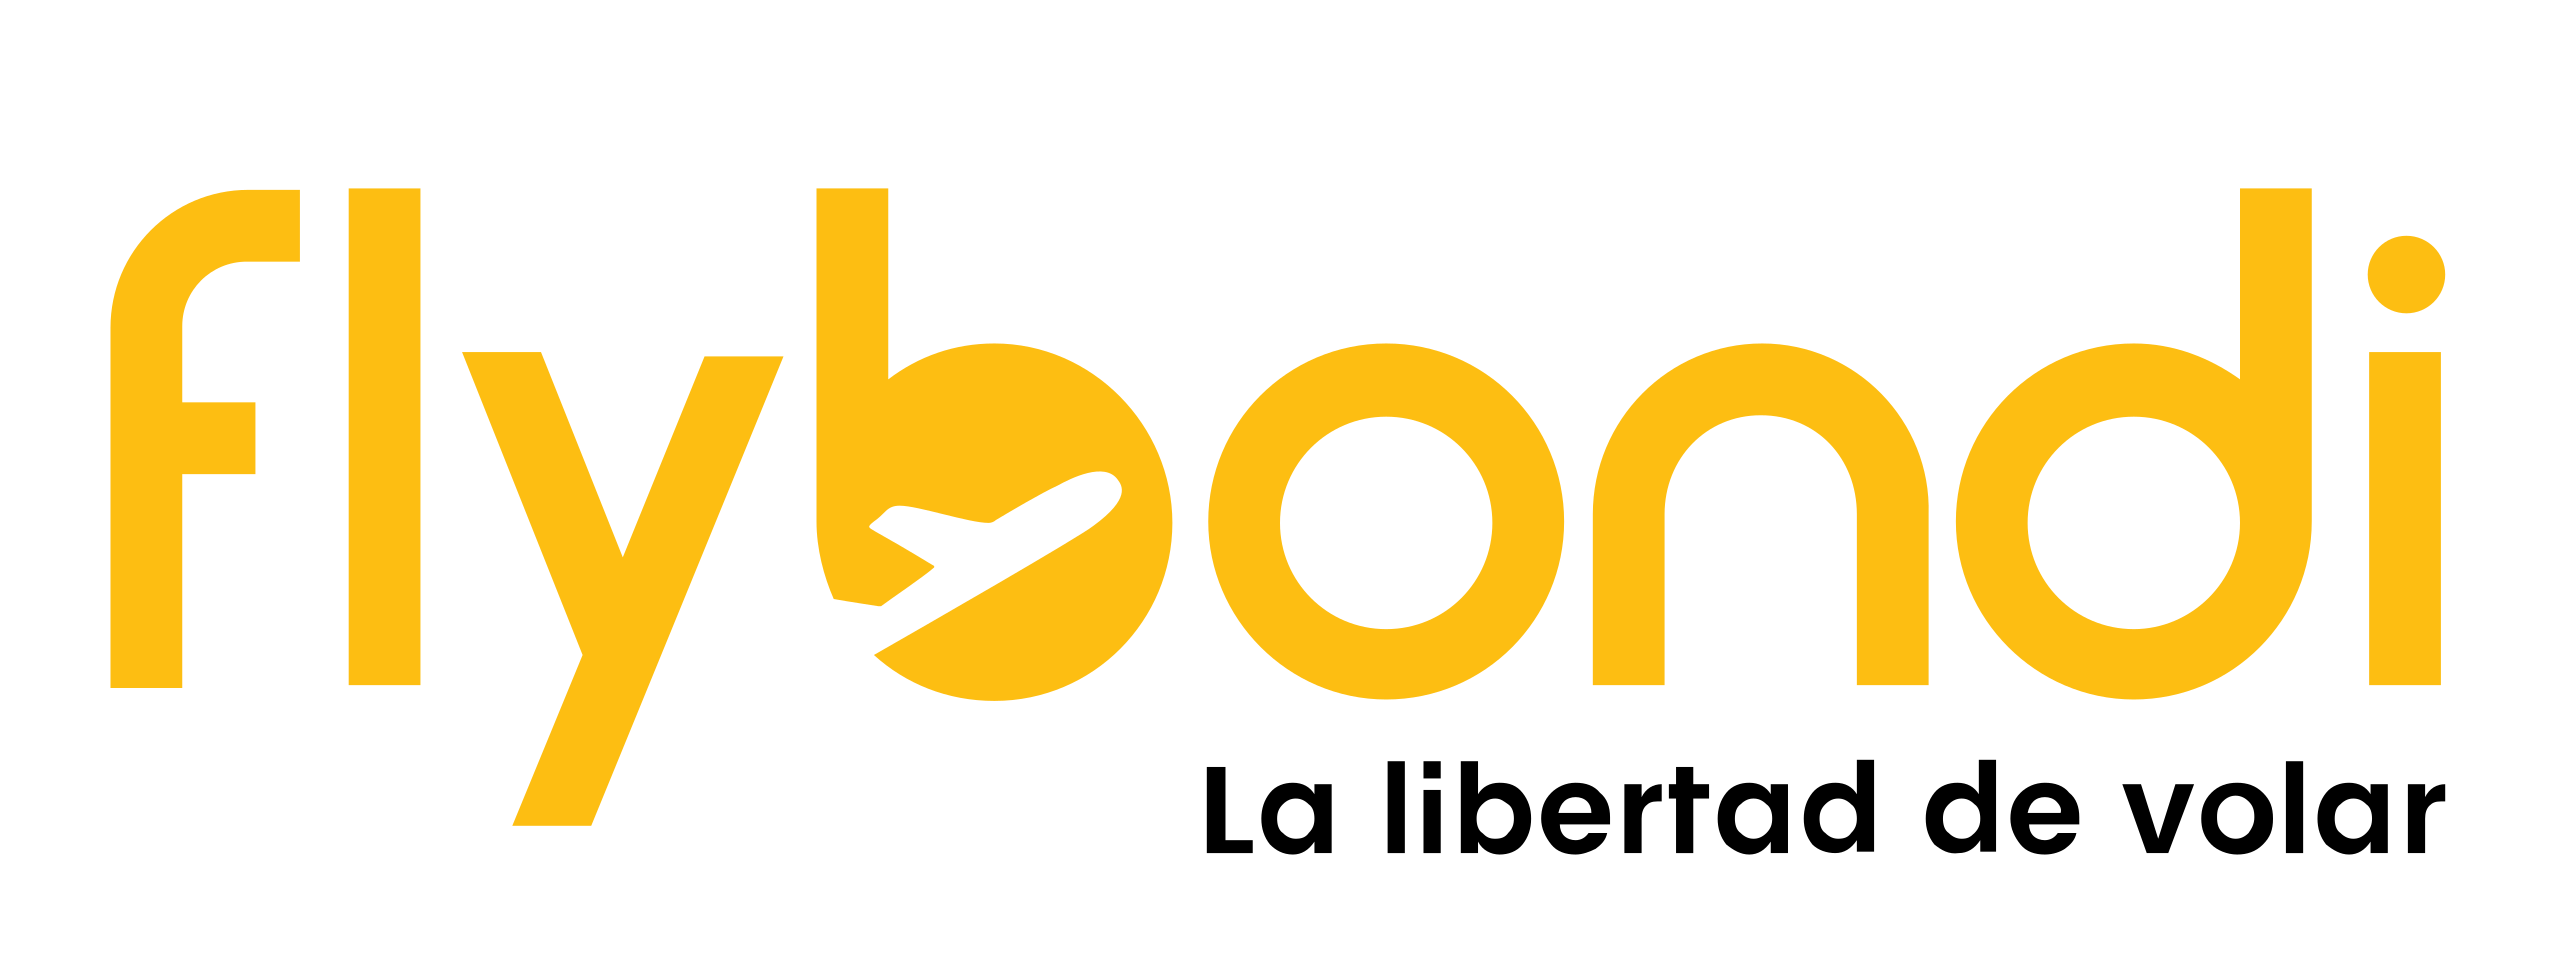 flybondi_company_logo-svg